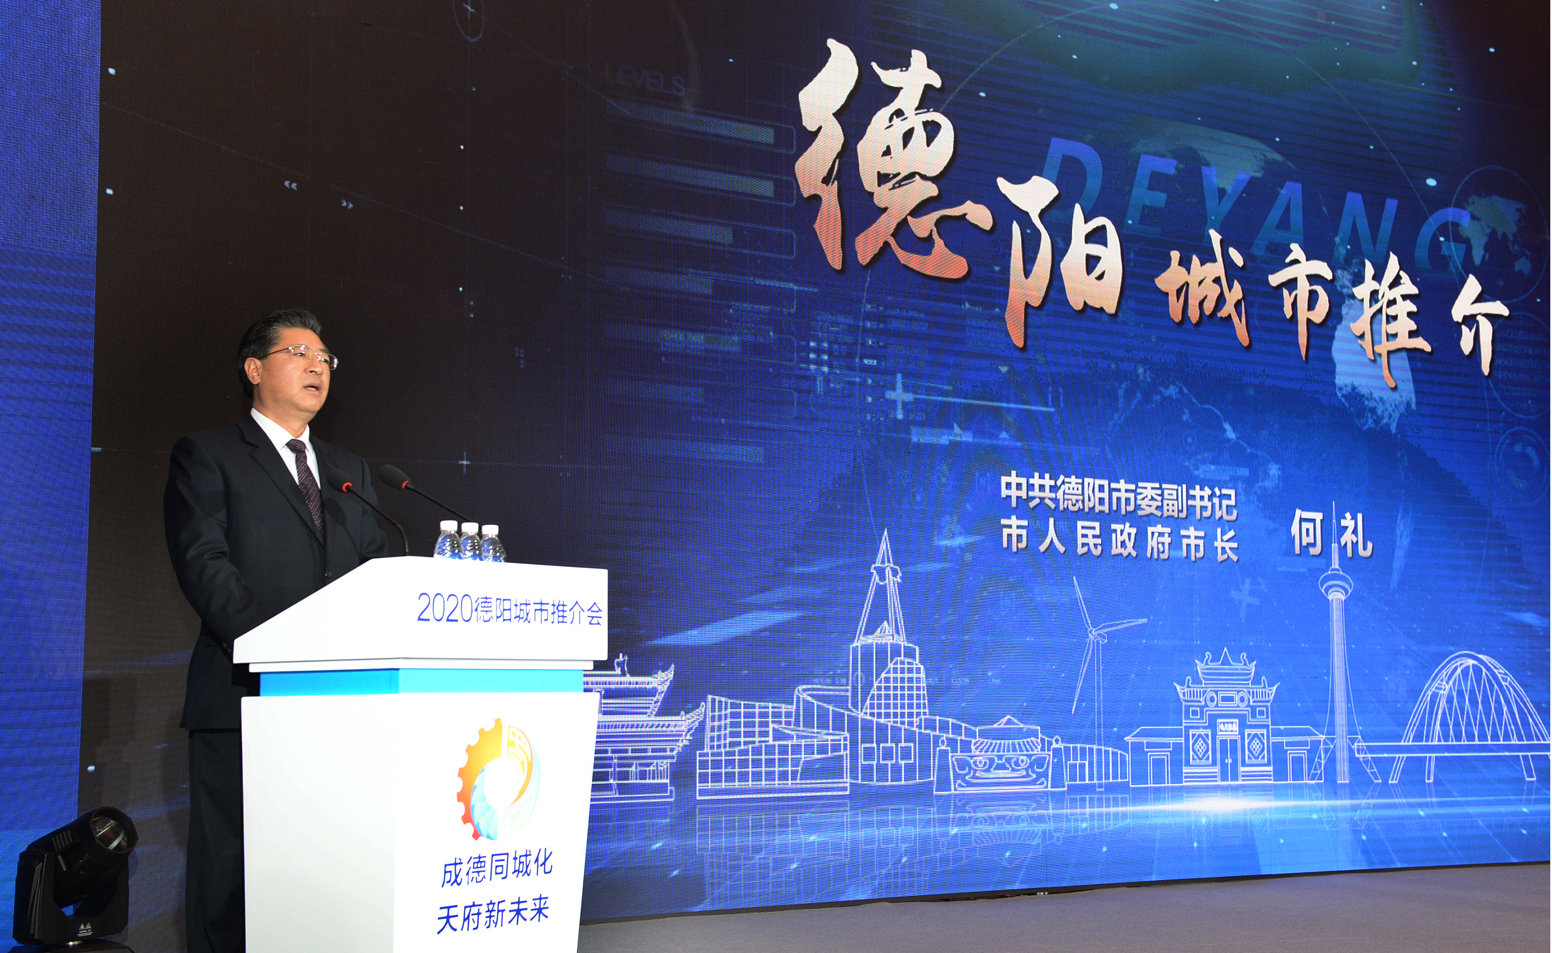 “成德同城化、天府新未来”2020德阳城市推介会在成都举行-中国网地产